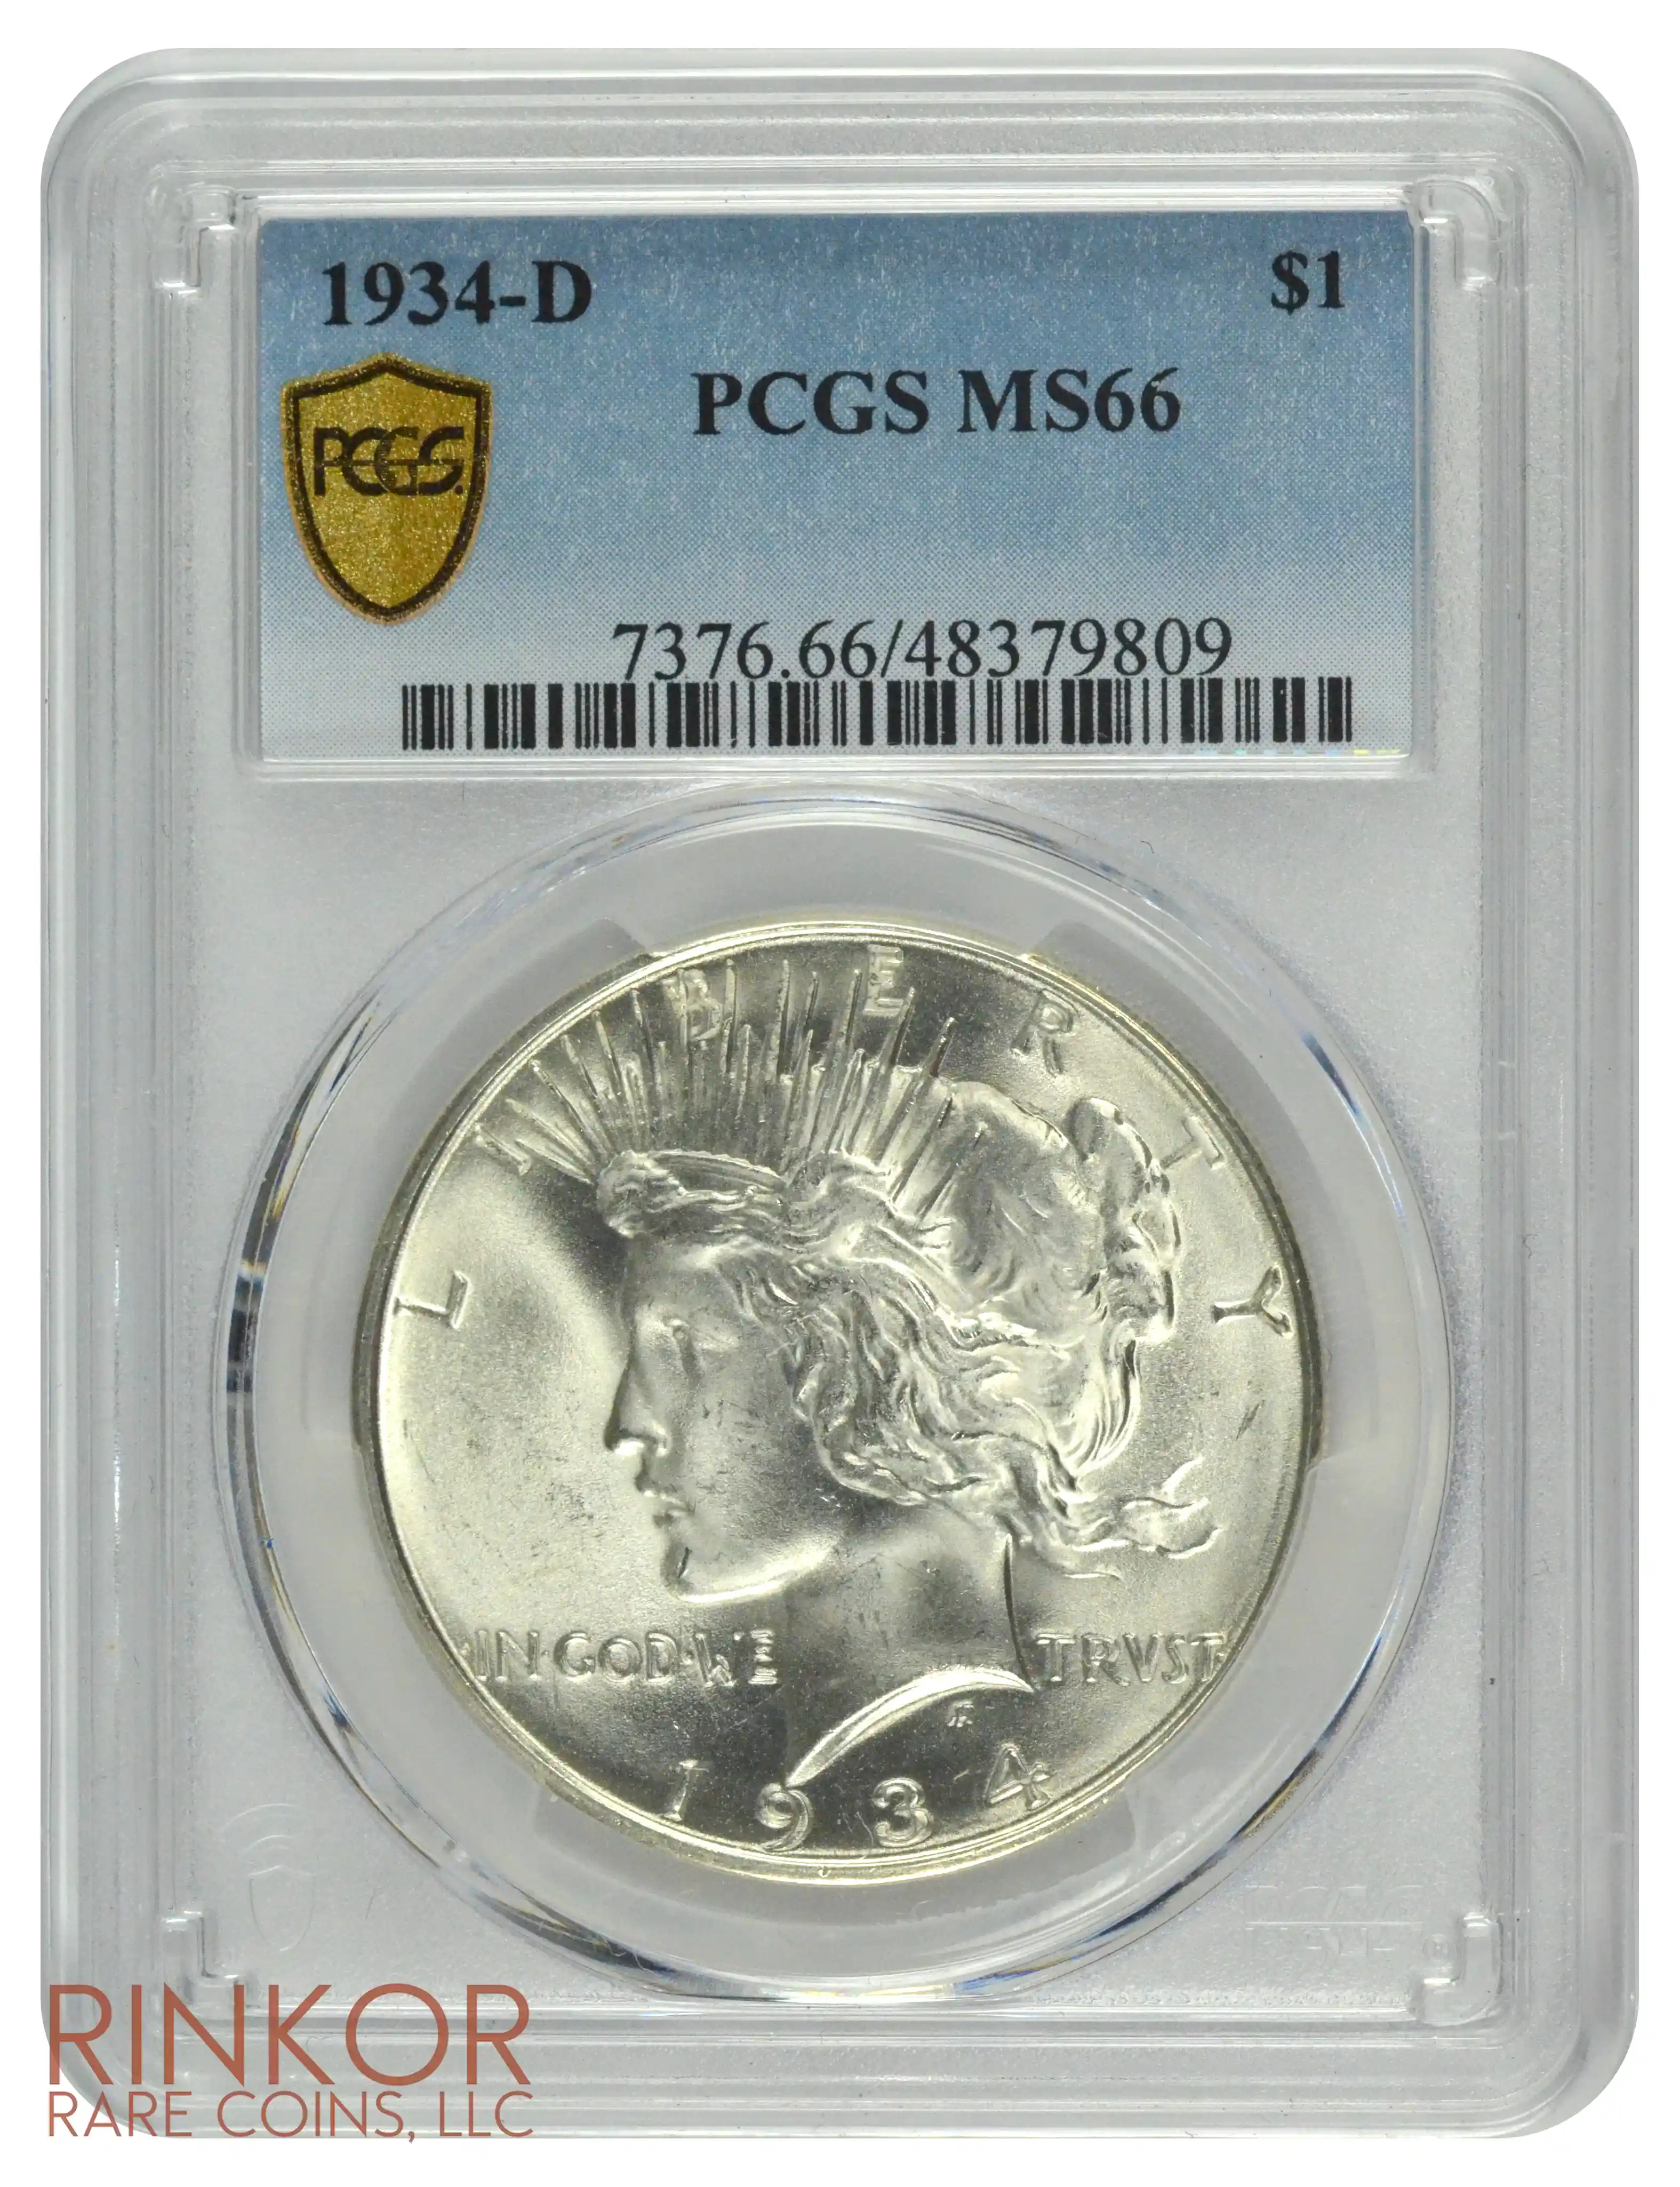 1934-D $1 PCGS MS 66